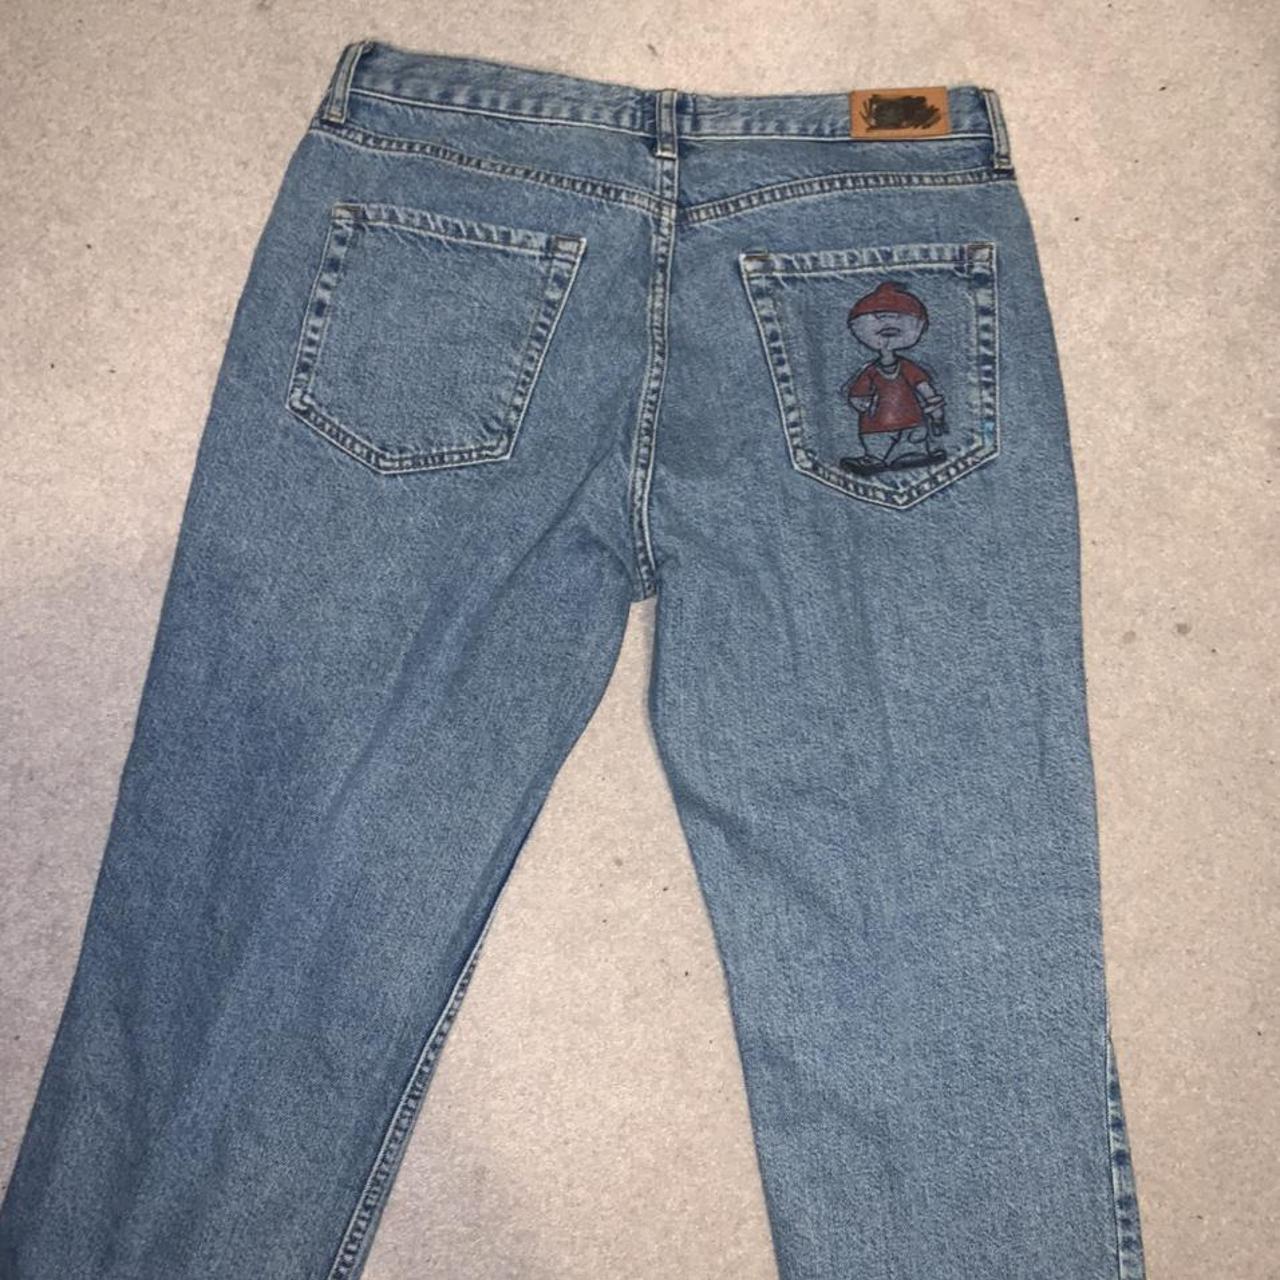 Some kinda baggy jeans not taht baggy i drawer on em - Depop